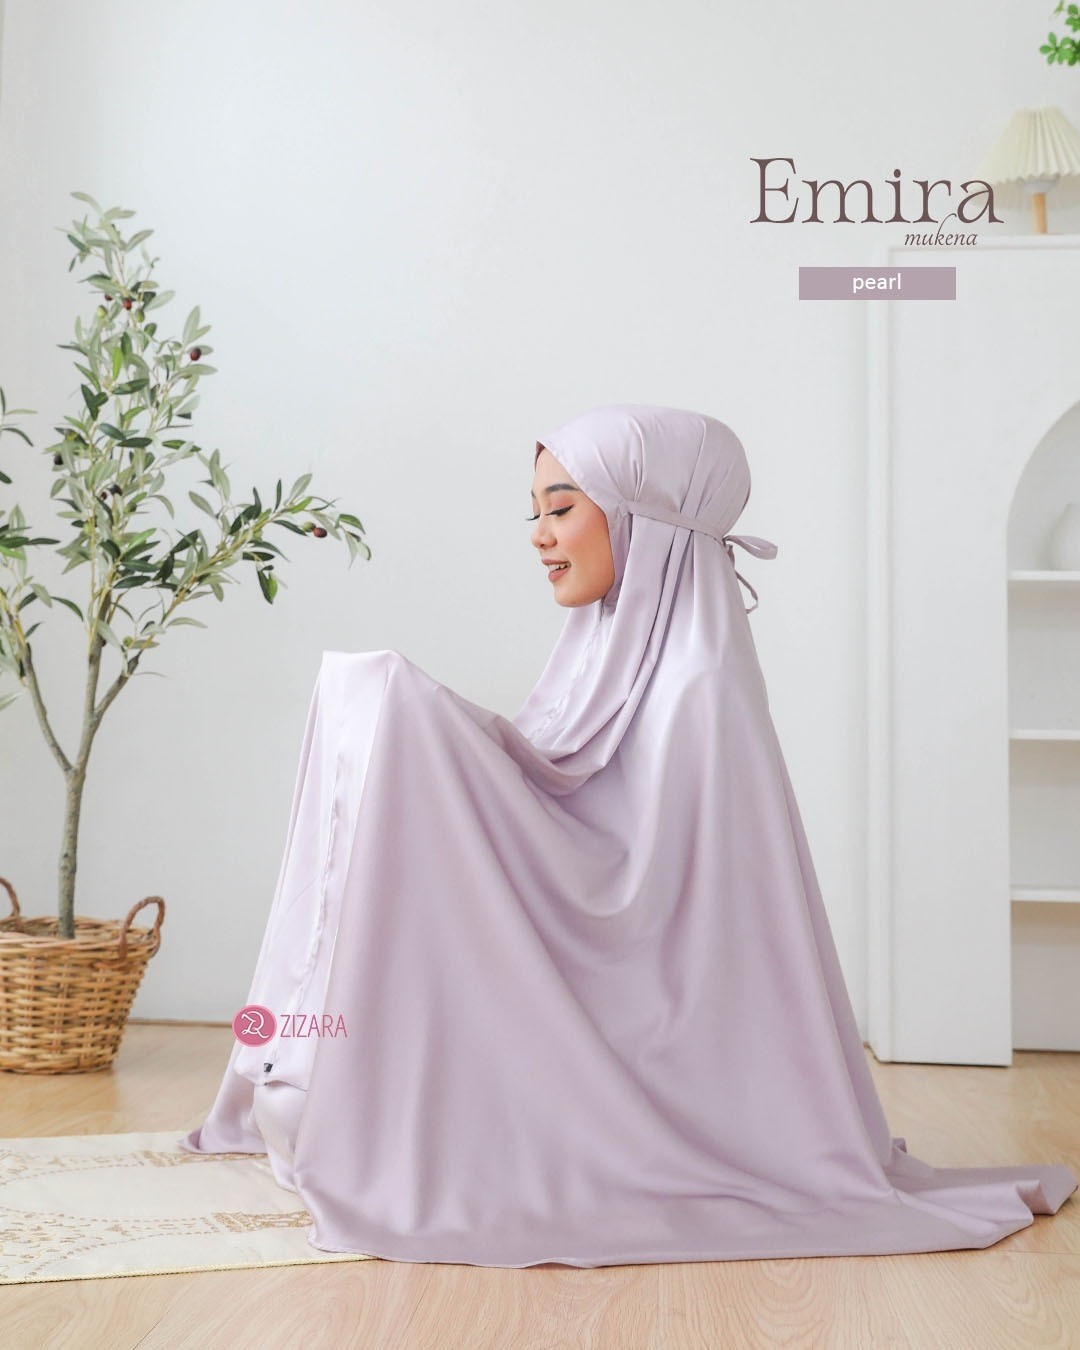 LINE_ALBUM_Emira, Elma_230219_1